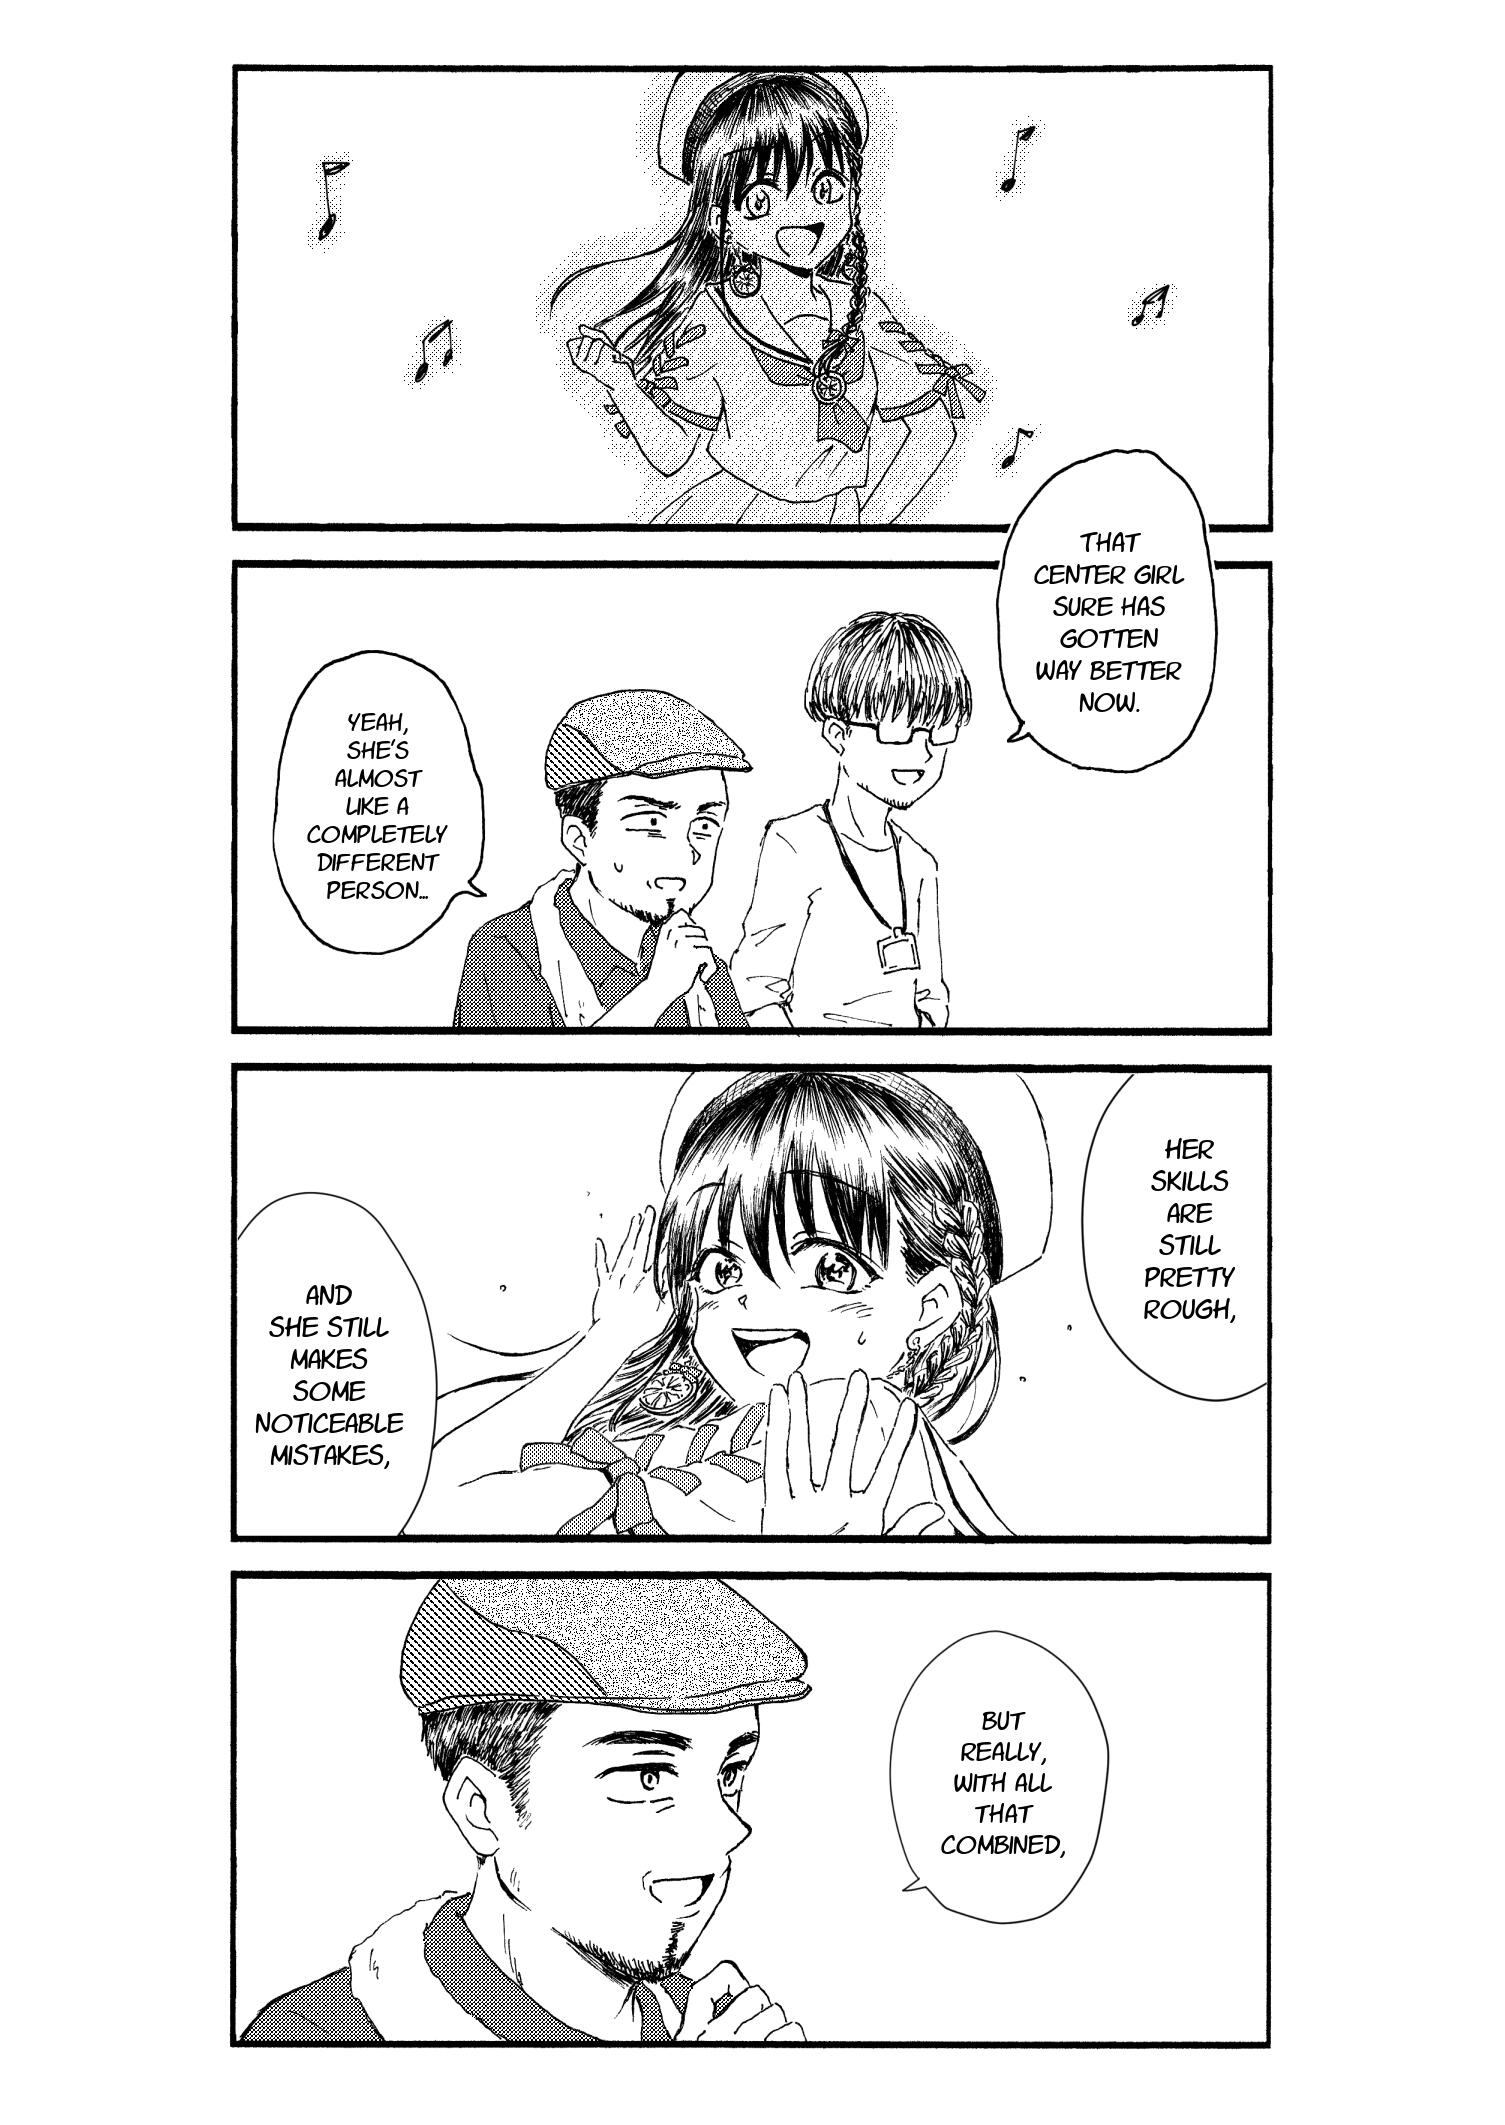 Kimoota, Idol Yarutteyo Chapter 22: Creepy Nerd, Shoots An Mv (Part 2) page 5 - Mangakakalots.com